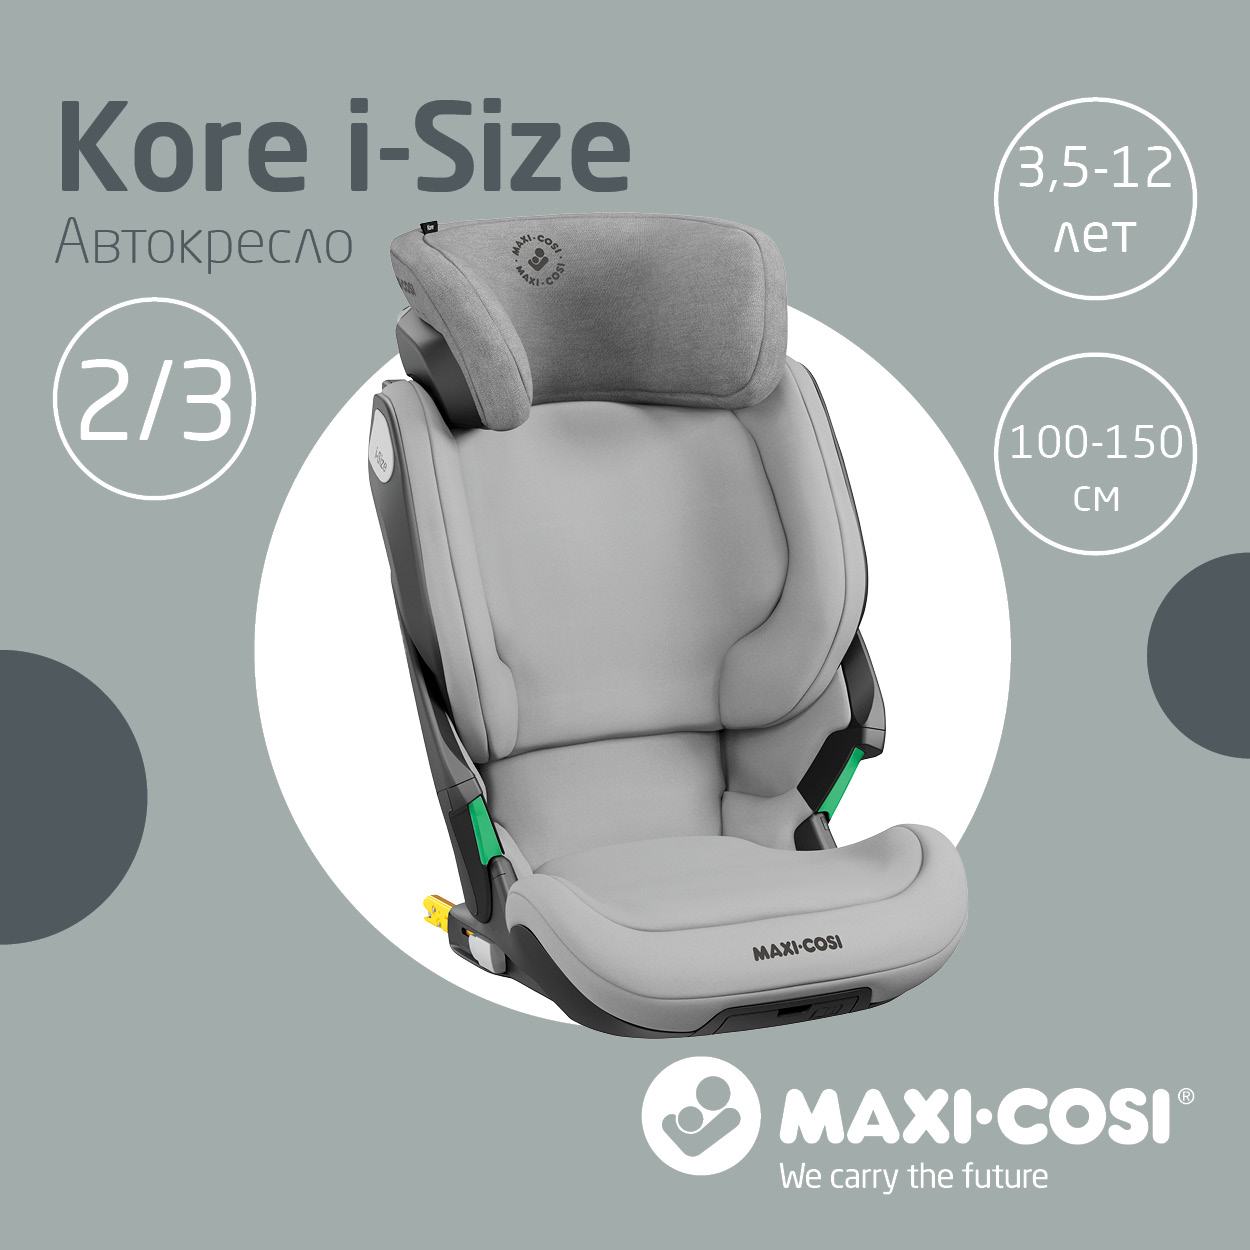 Автокресло Maxi-Cosi Kore i-Size 15-36 кг Authentic Grey Серый автокресло maxi cosi kore i size